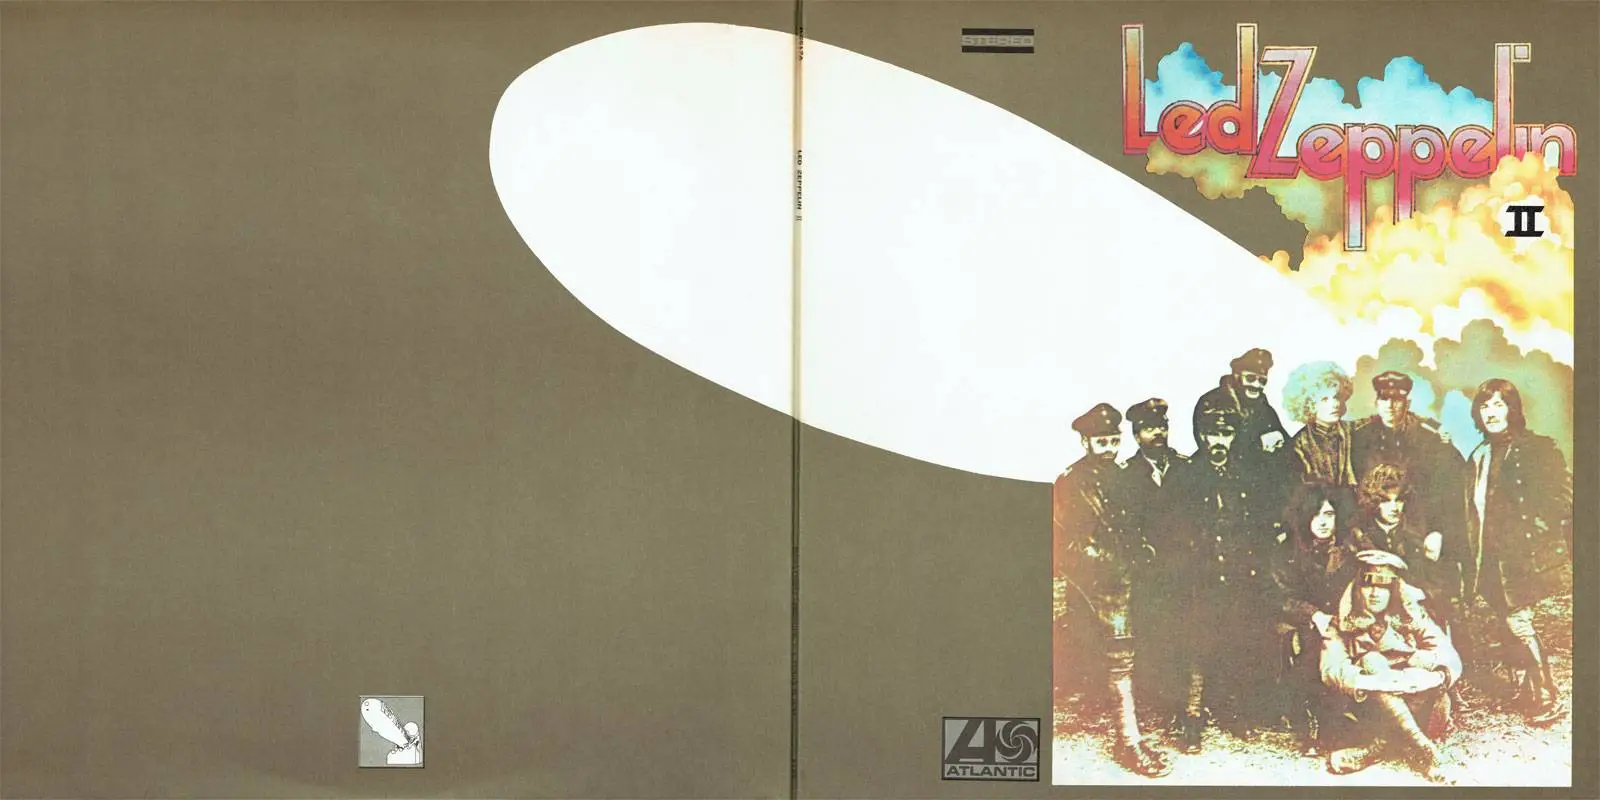 1969 Led Zeppelin II обложка